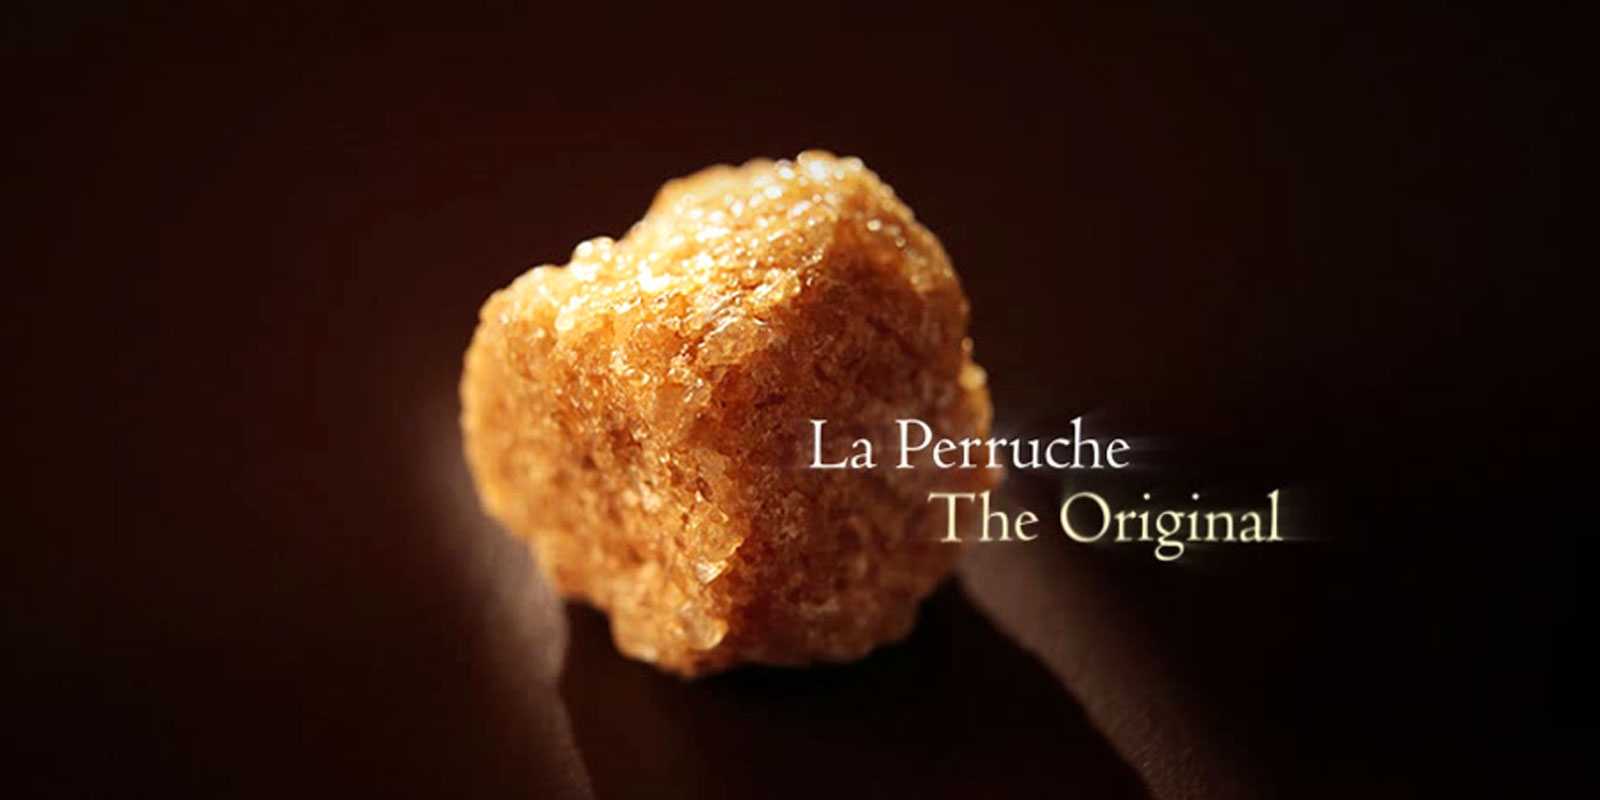 La Perruche - trstinovy cukor La Perruche je vynimocny produkt so specialnou chutou, ktora potesi vsetkych, ktori ocenia jemnu a sofistikovanu chut. Jednoducho, vykuzli vo vasich zmysloch cire potesenie. La Perruche sa dodava v nepravidelnych cukrovych hrudkach v bielej alebo zlatohnedej farbe. Krystalicka forma v sejkri, tiez znama ako cassonada.